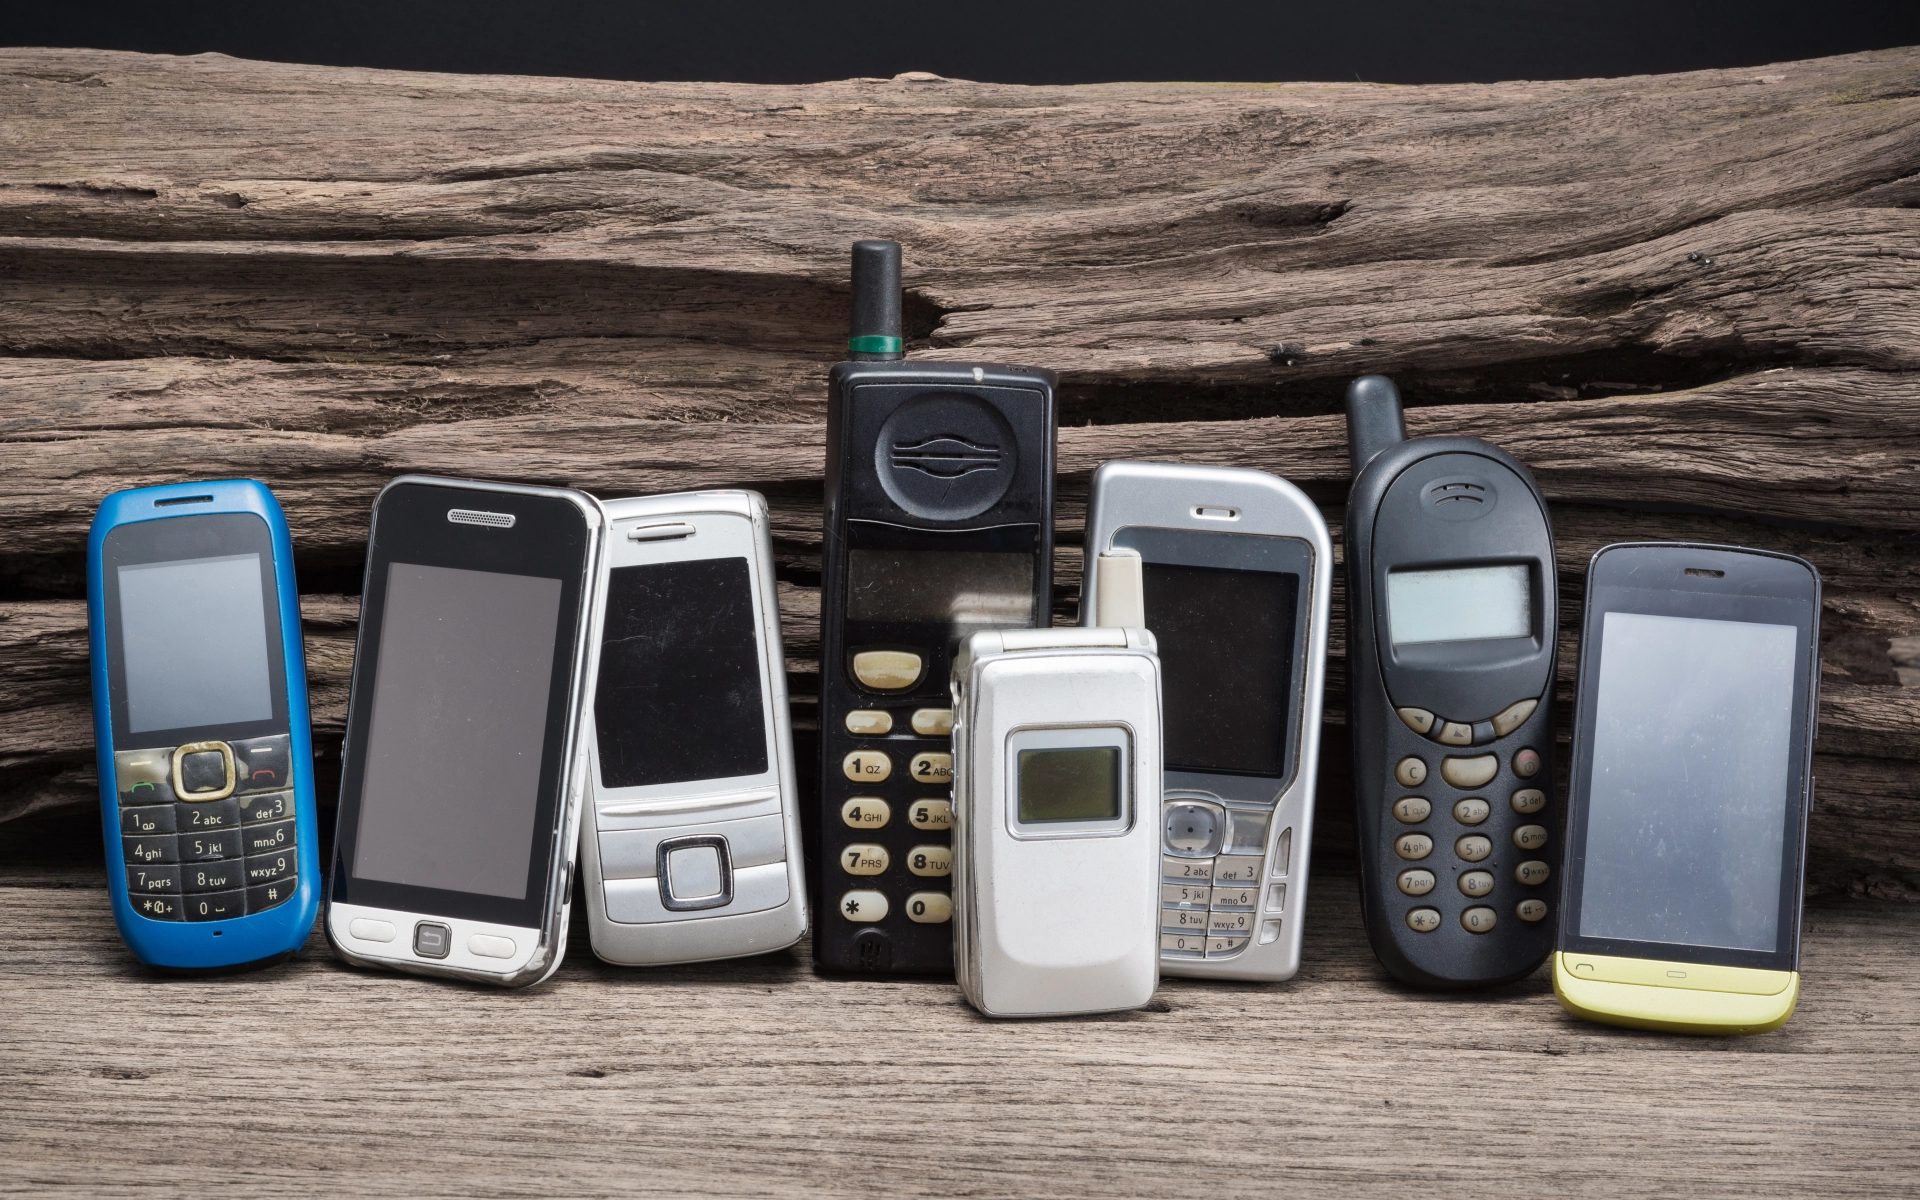 Acht Mobil-Telefone, wie sie seit den 90er-Jahren verwendet wurden. Ganz rechts im Bild ist ein Smartphone mit Touch-Display, das die Entwicklung in eine neue Richtung von Mobil-Telefonen zeigt.